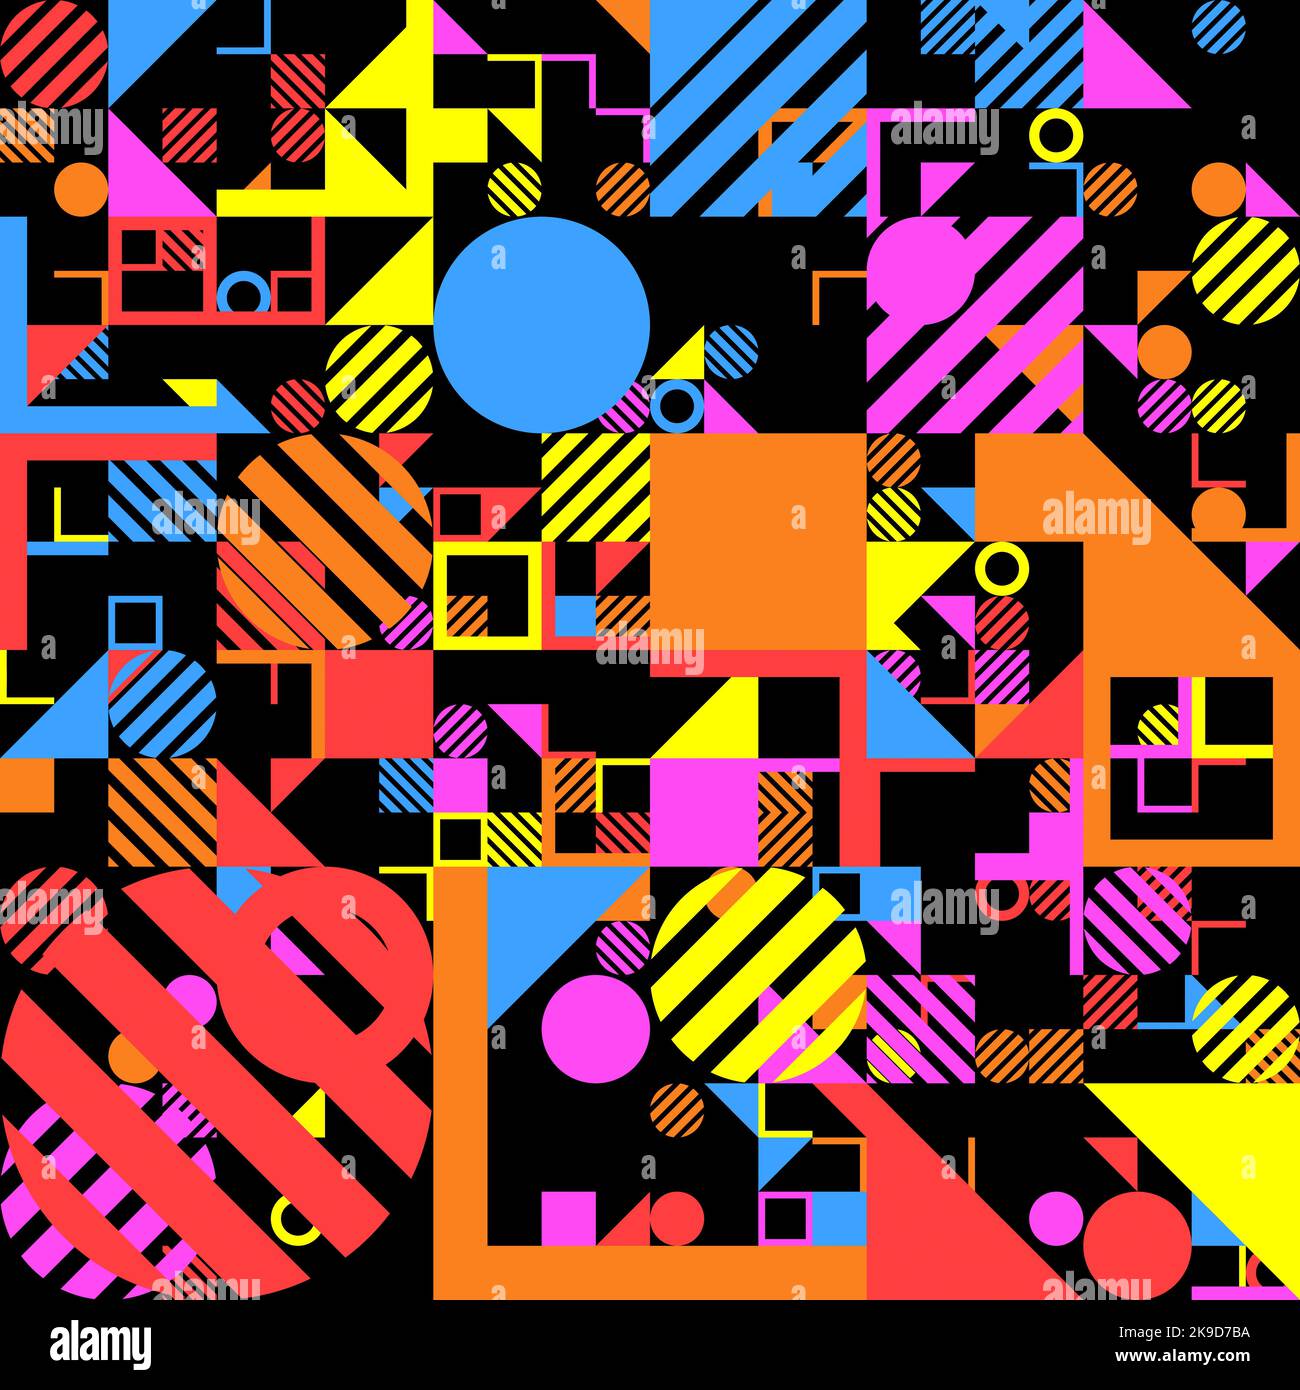 Helle farbige Formen nahtloses Muster.attraktives modernes Muster. Quadrate, Linien, Gitter, Dreiecke, L-Formen und Kreise verschiedener starker Farben, t Stockfoto